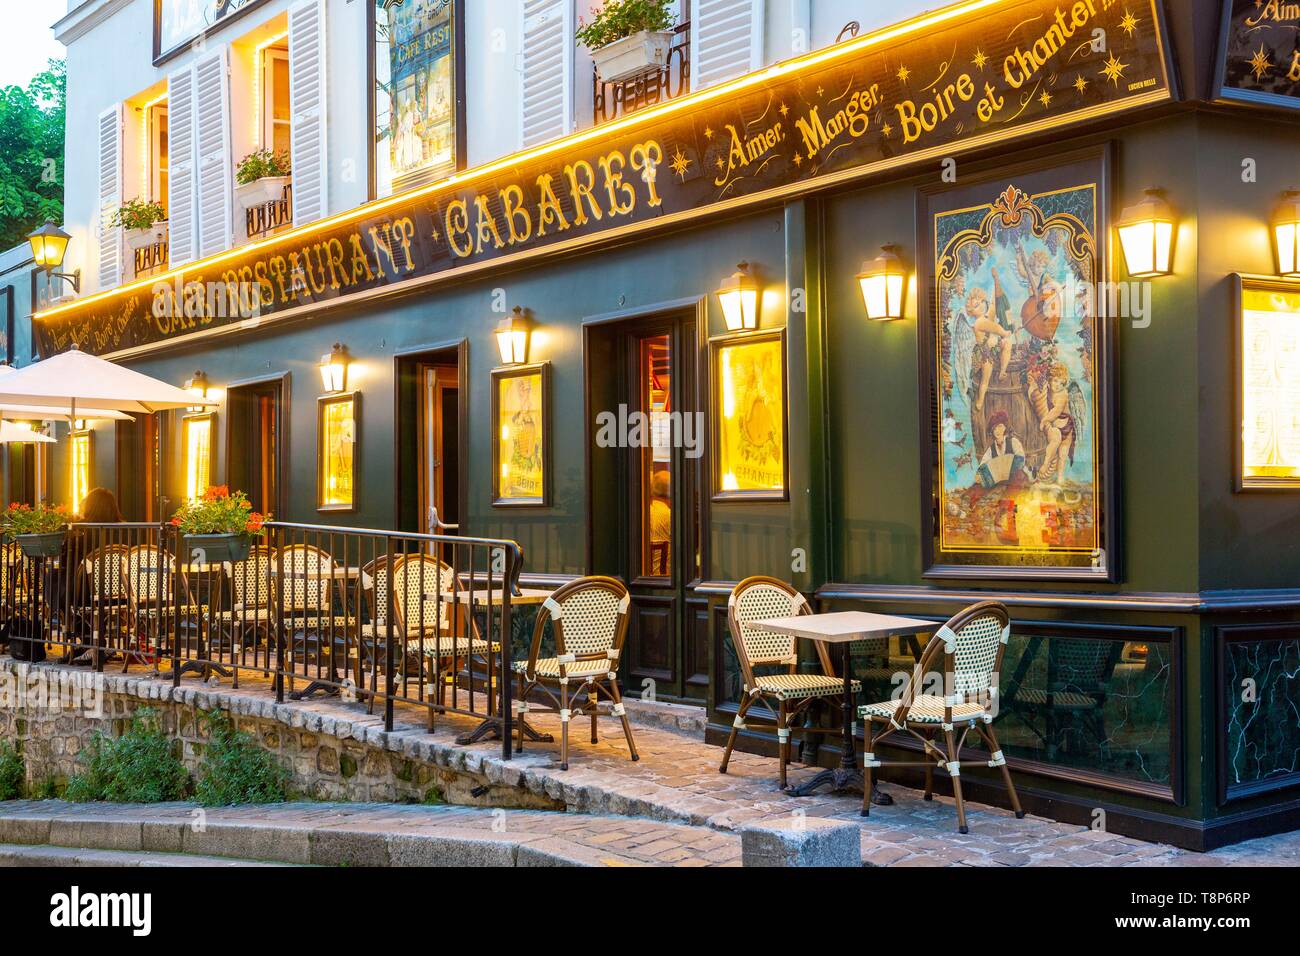 France, Paris, Butte Montmartre, restaurant Stock Photo